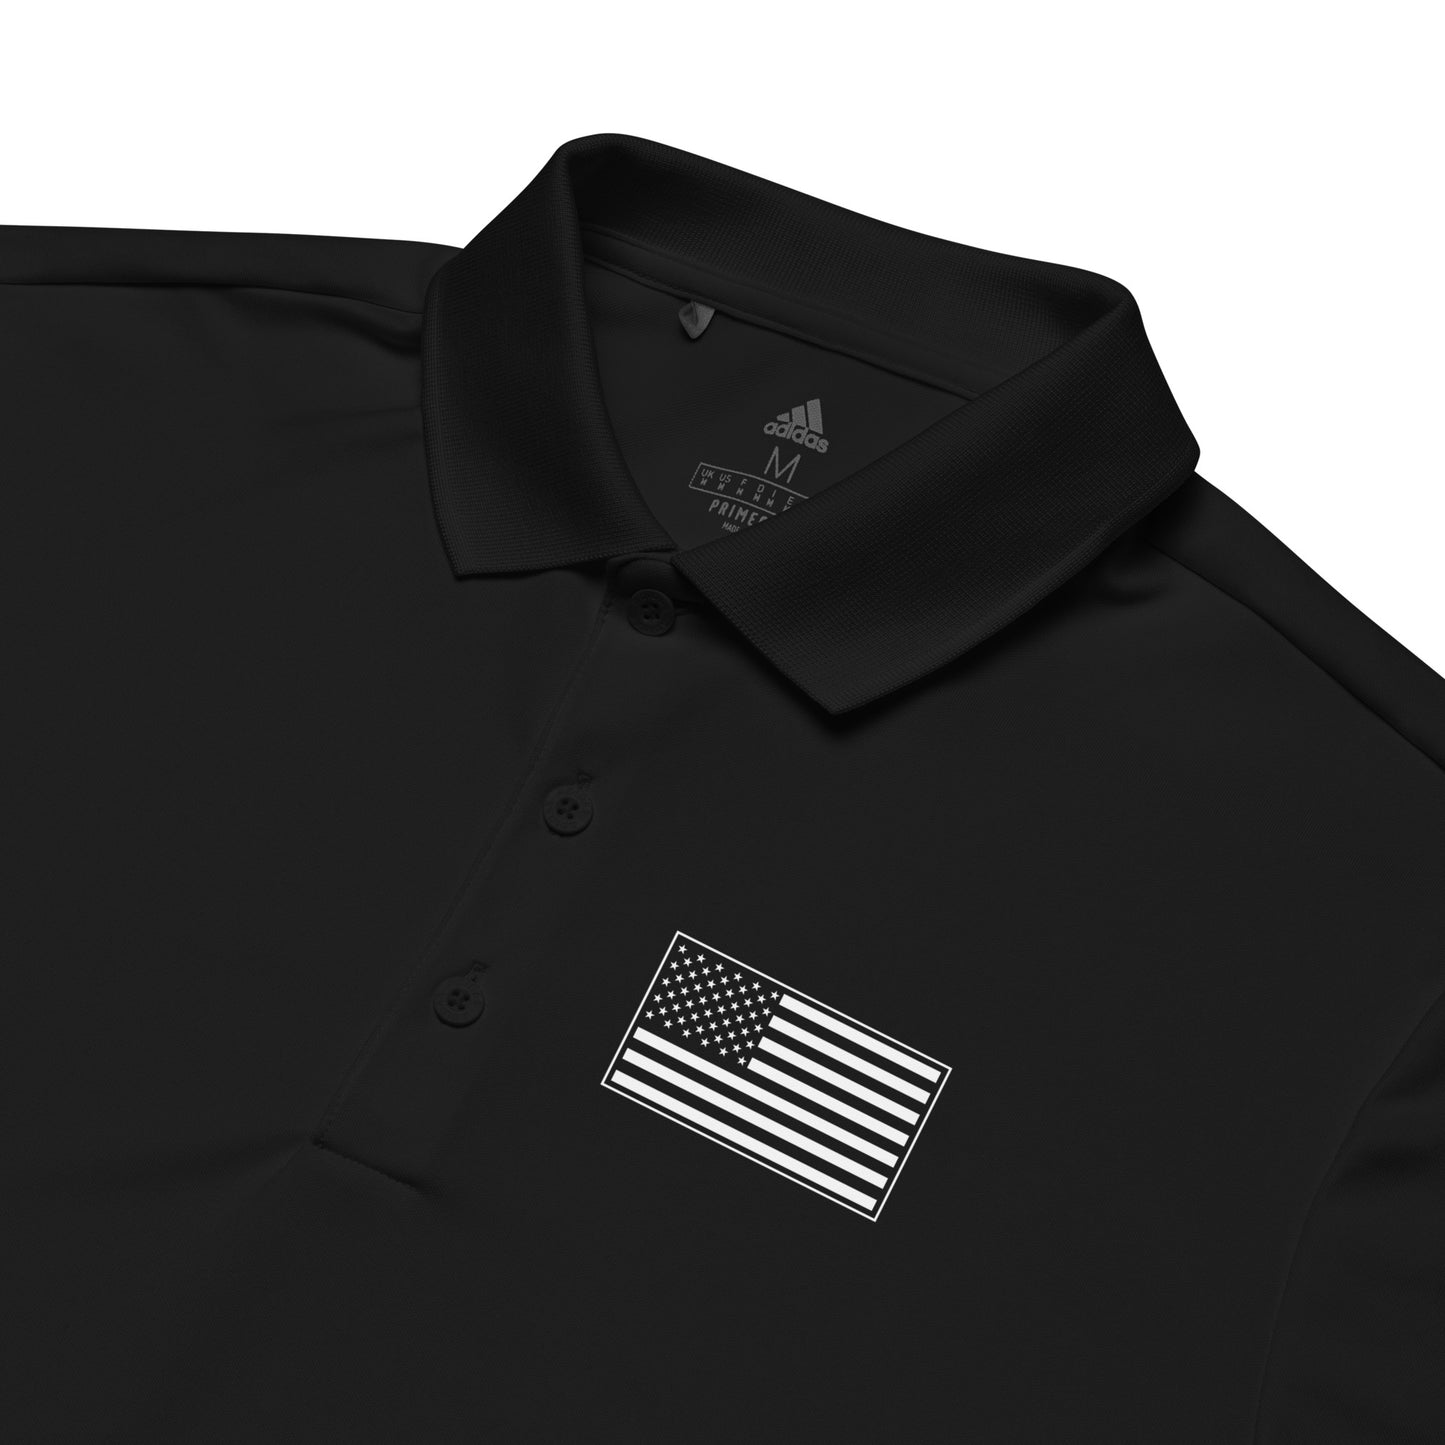 Black adidas Polo Shirt - Standard USA Flag